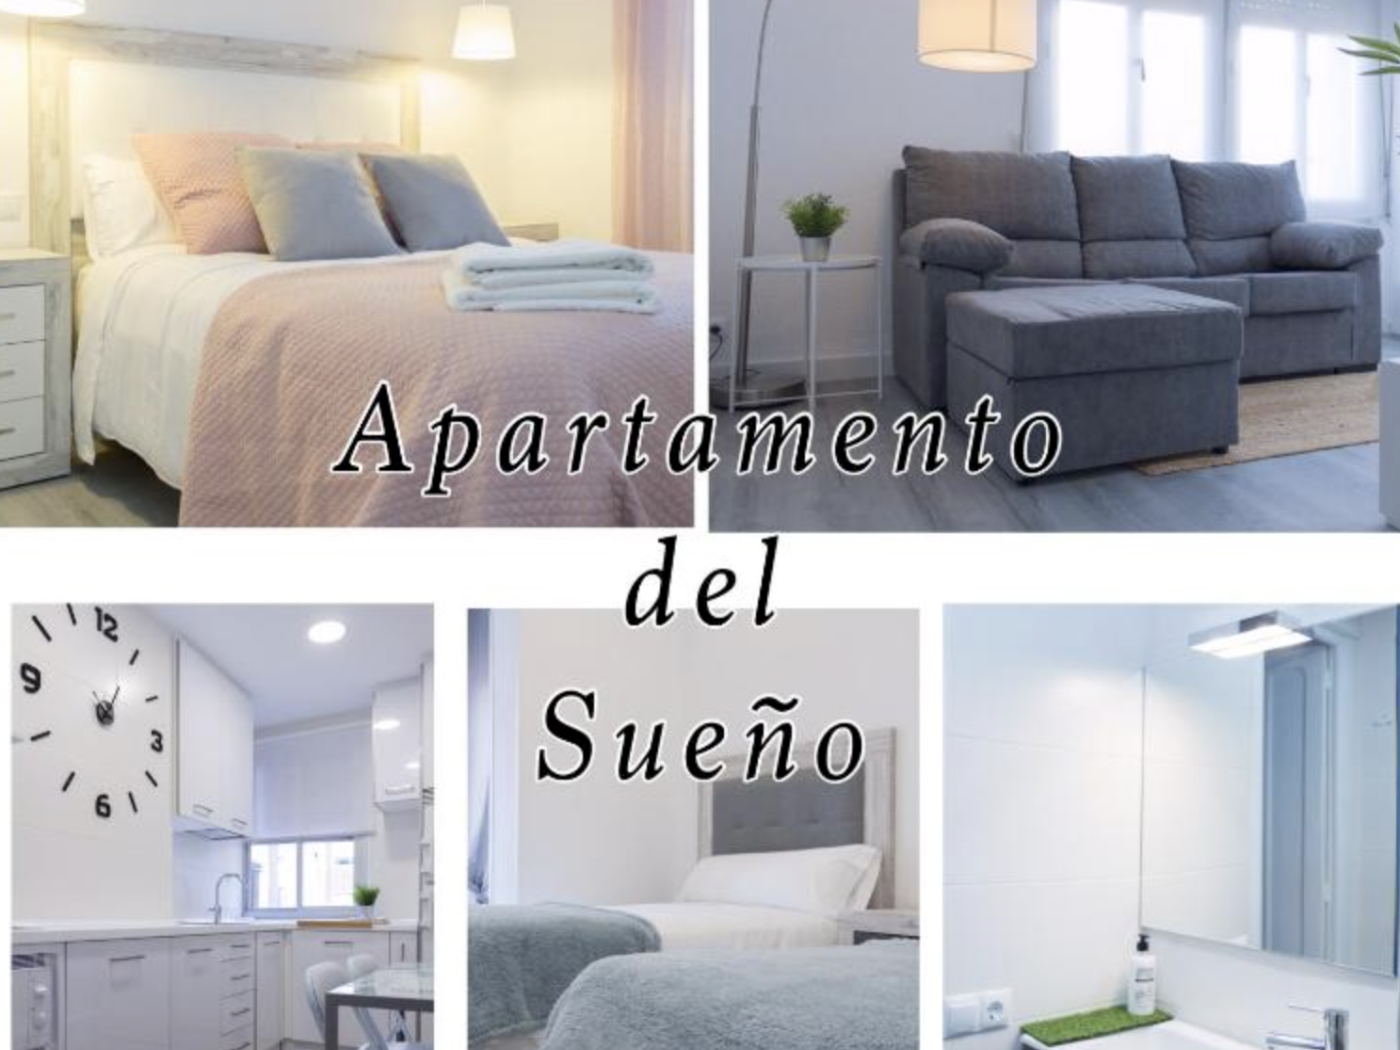 Apartamento del Sueño à Logroño